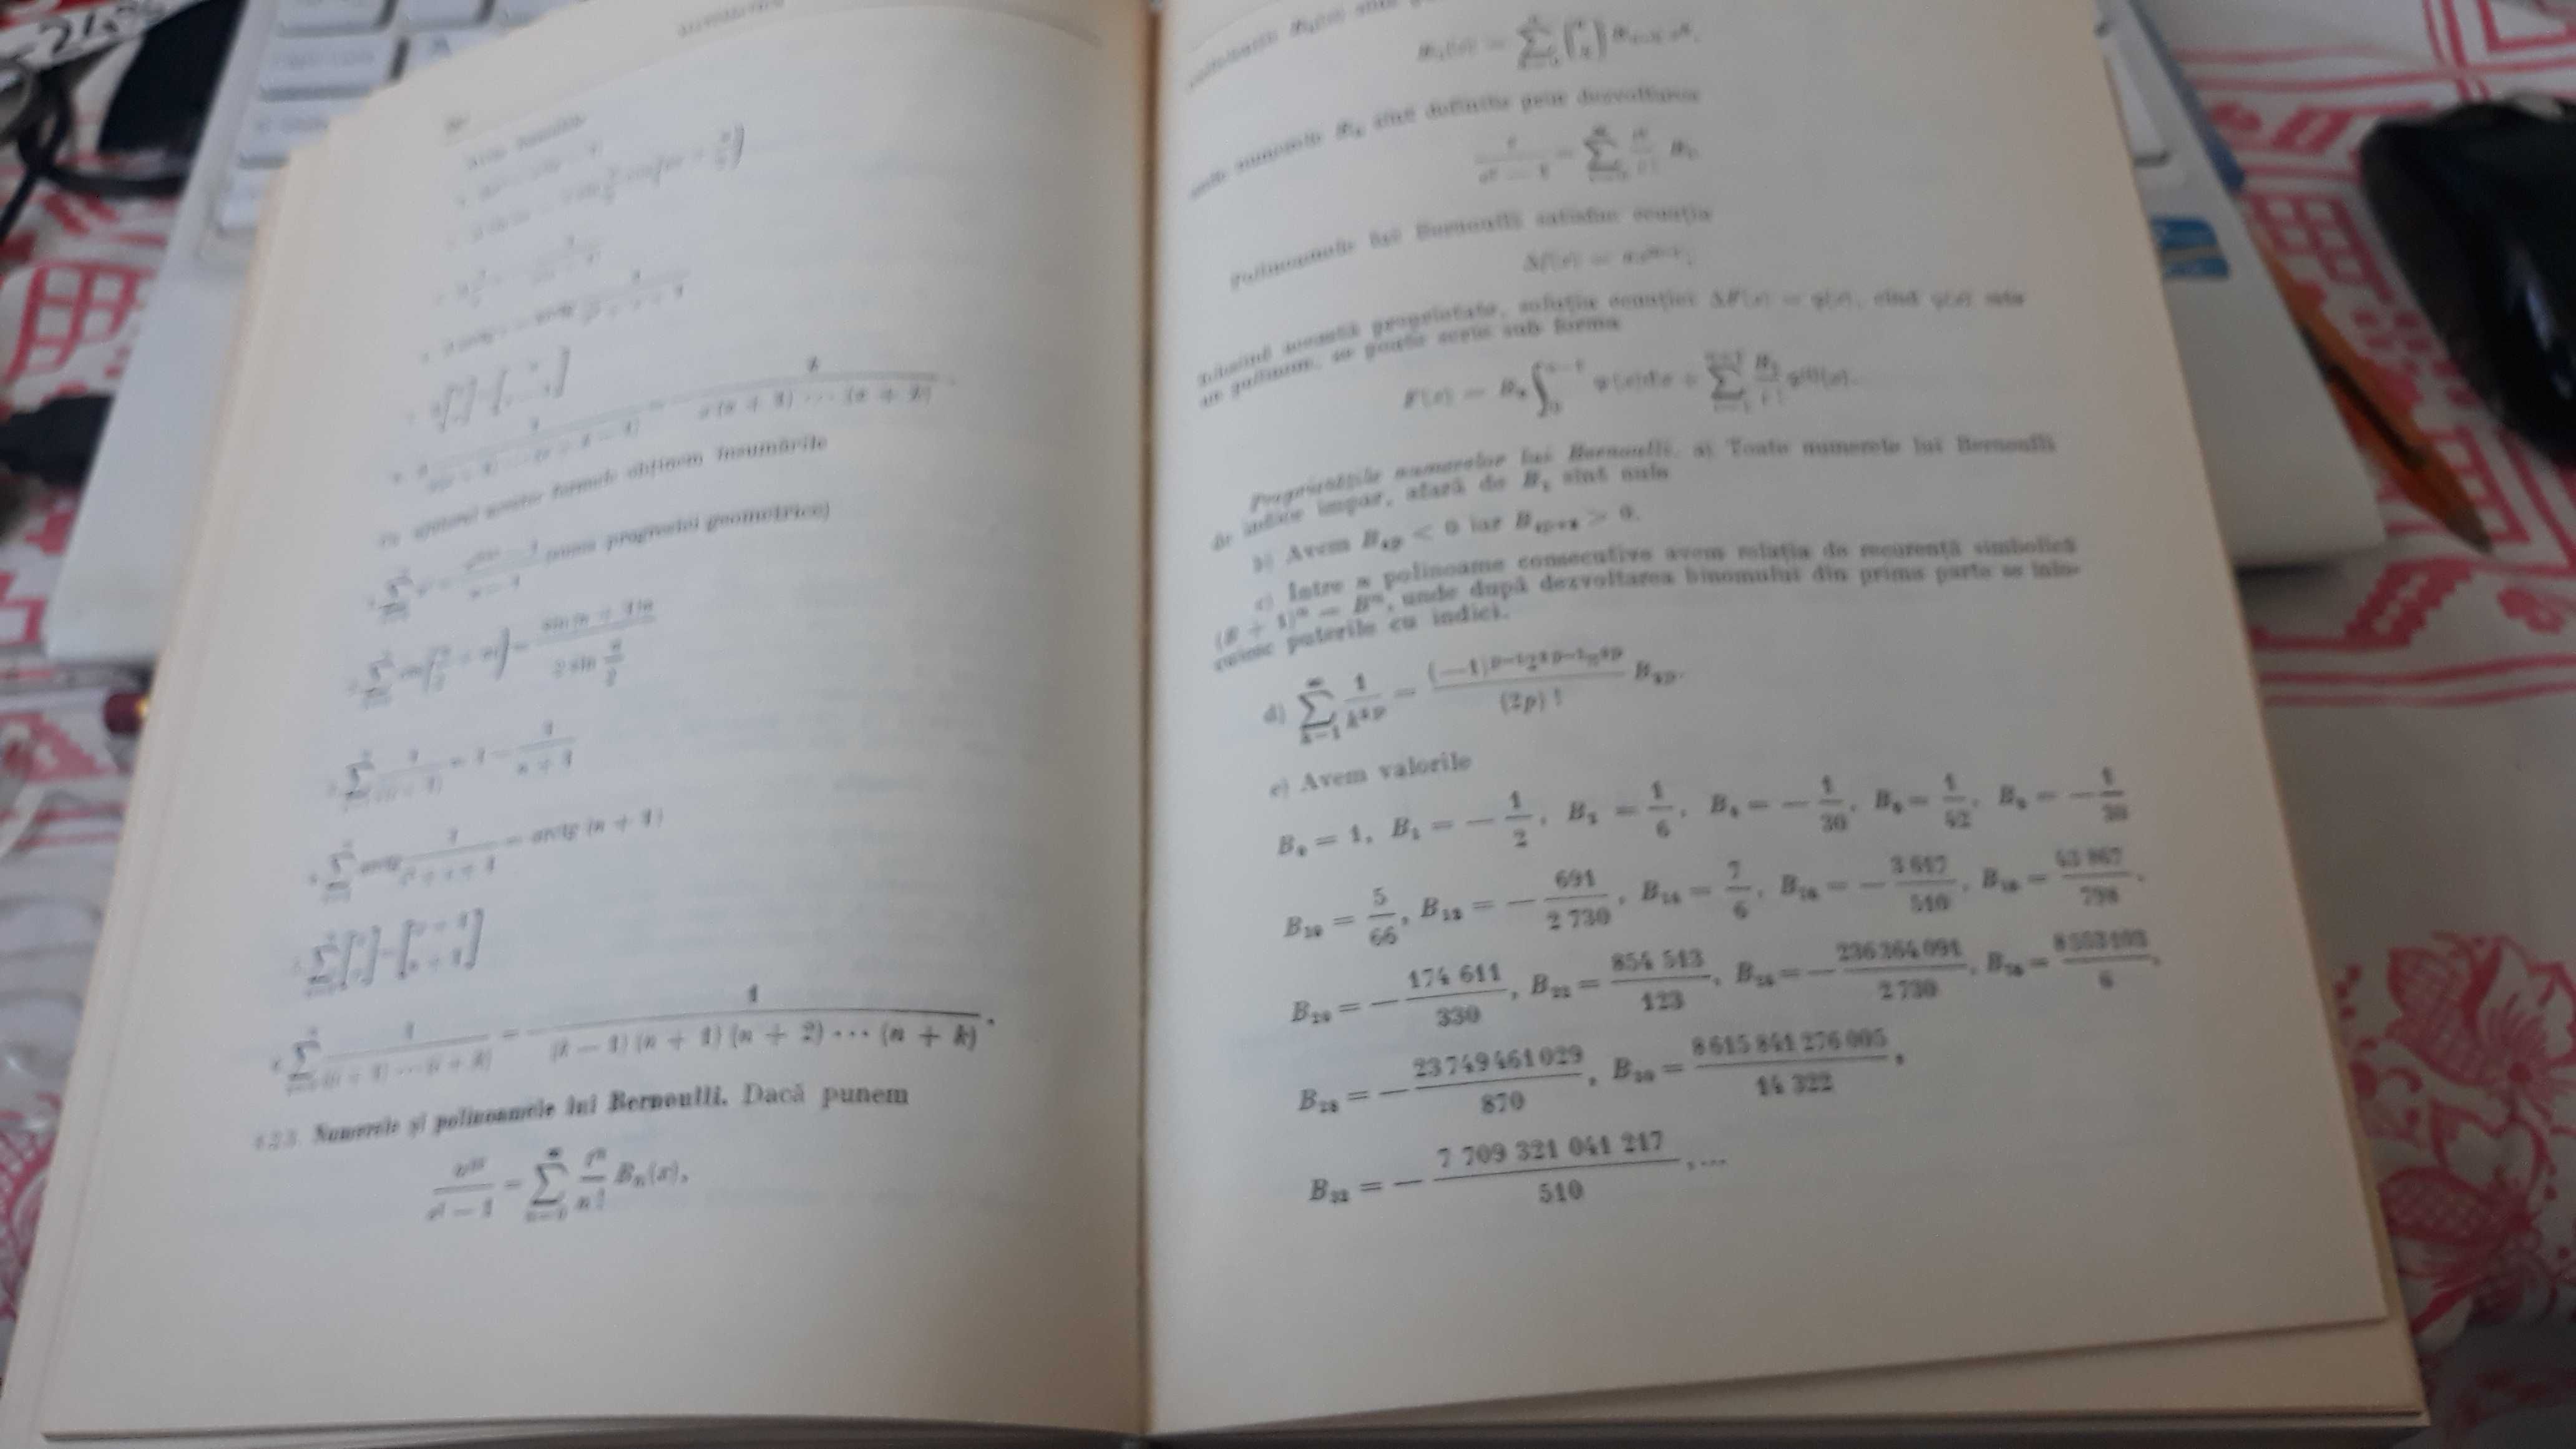 Manualul Inginerului vol. I, de Hutte, si altul de Buzdugan-E.T.